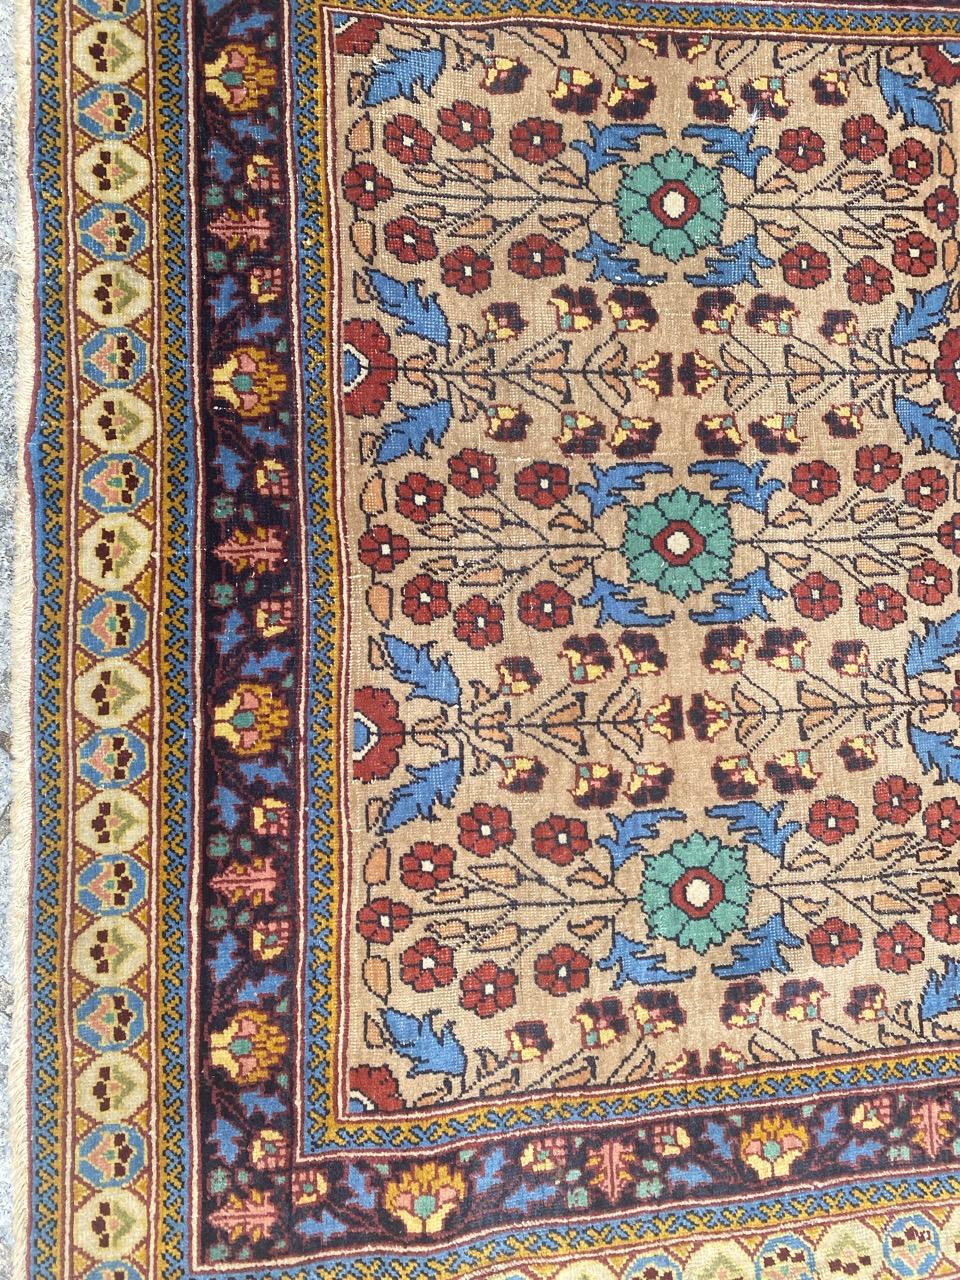 Sehr hübscher Sarouk-Teppich aus dem frühen 20. Jahrhundert mit schönem, stilisiertem Blumenmuster und schönen Farben mit gelber Feldfarbe, komplett handgeknüpft mit Wollsamt auf Baumwollgrund.

✨✨✨
